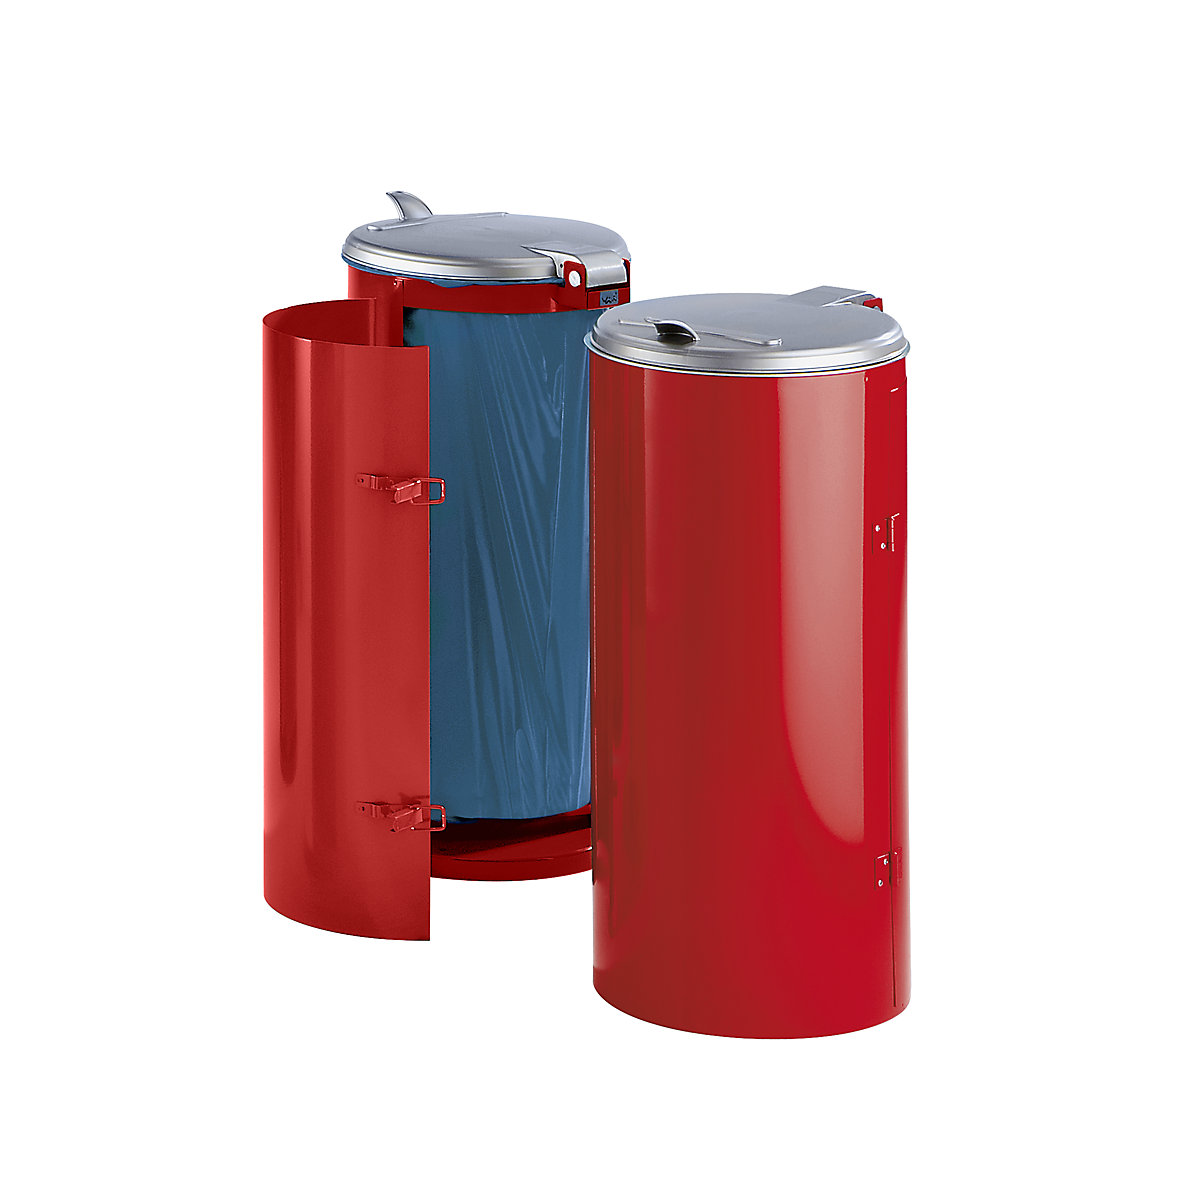 Coletor de lixo de chapa de aço – VAR, para volumes de 120 l, com porta de um batente, vermelho com tampa de plástico pintada em prateado-3